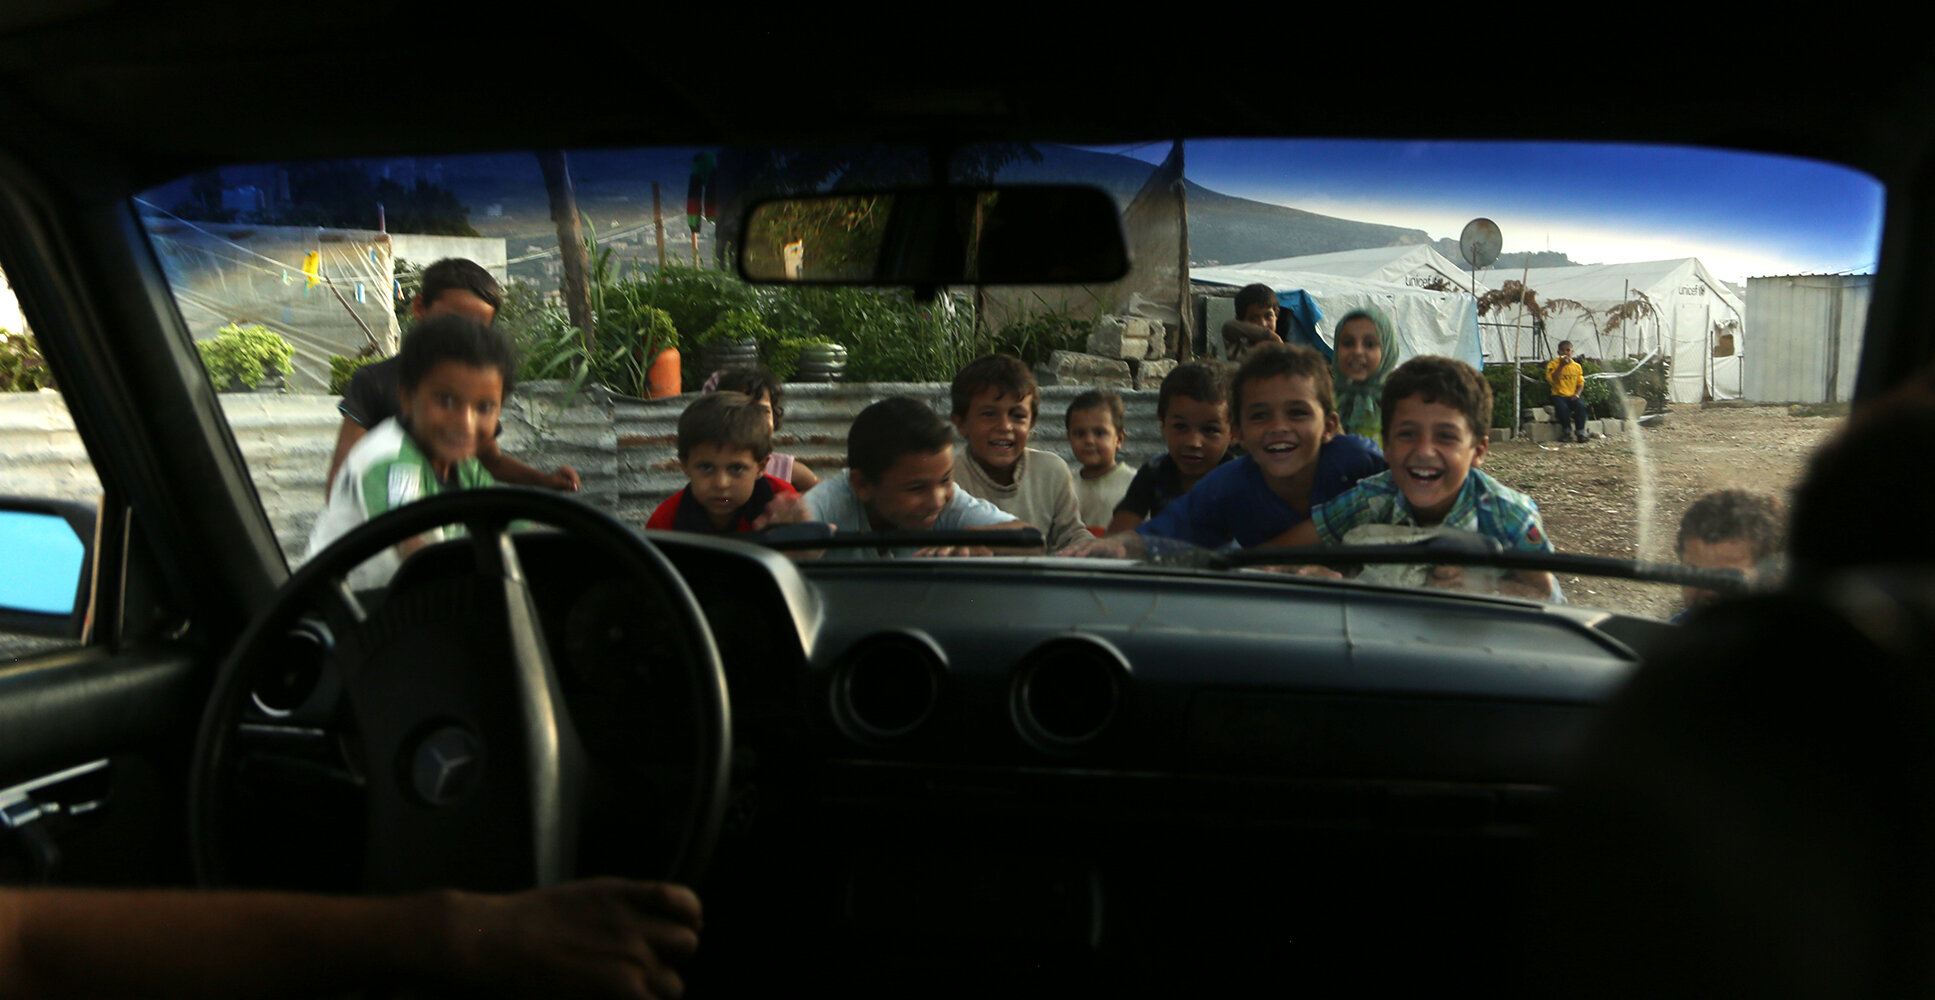 Generation Standstill | Syrian refugees in Lebanon | Anastasia Trofimova